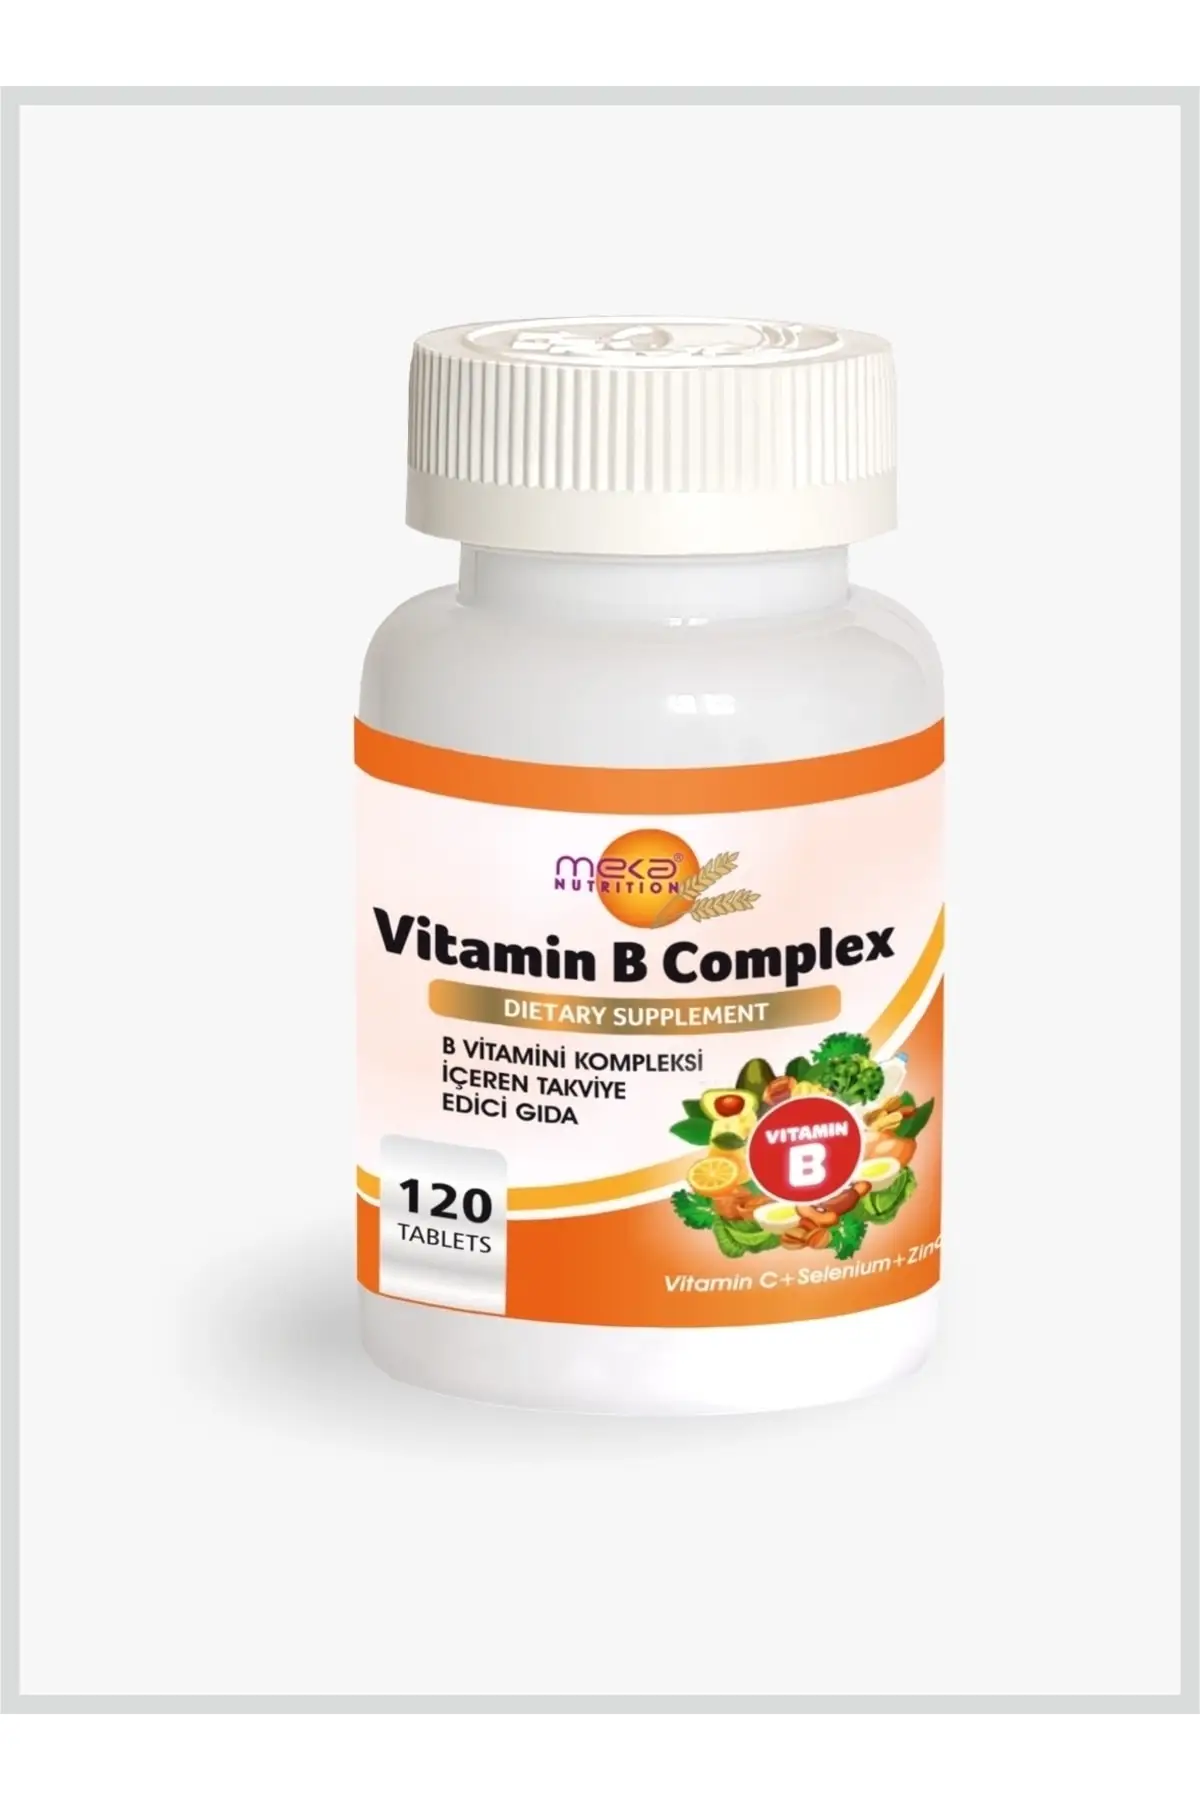 Селен турция. Витаминный комплекс. Комплекс витаминов. Витамин в Complex meka Nutrition Турция. Топ витаминных комплексов.